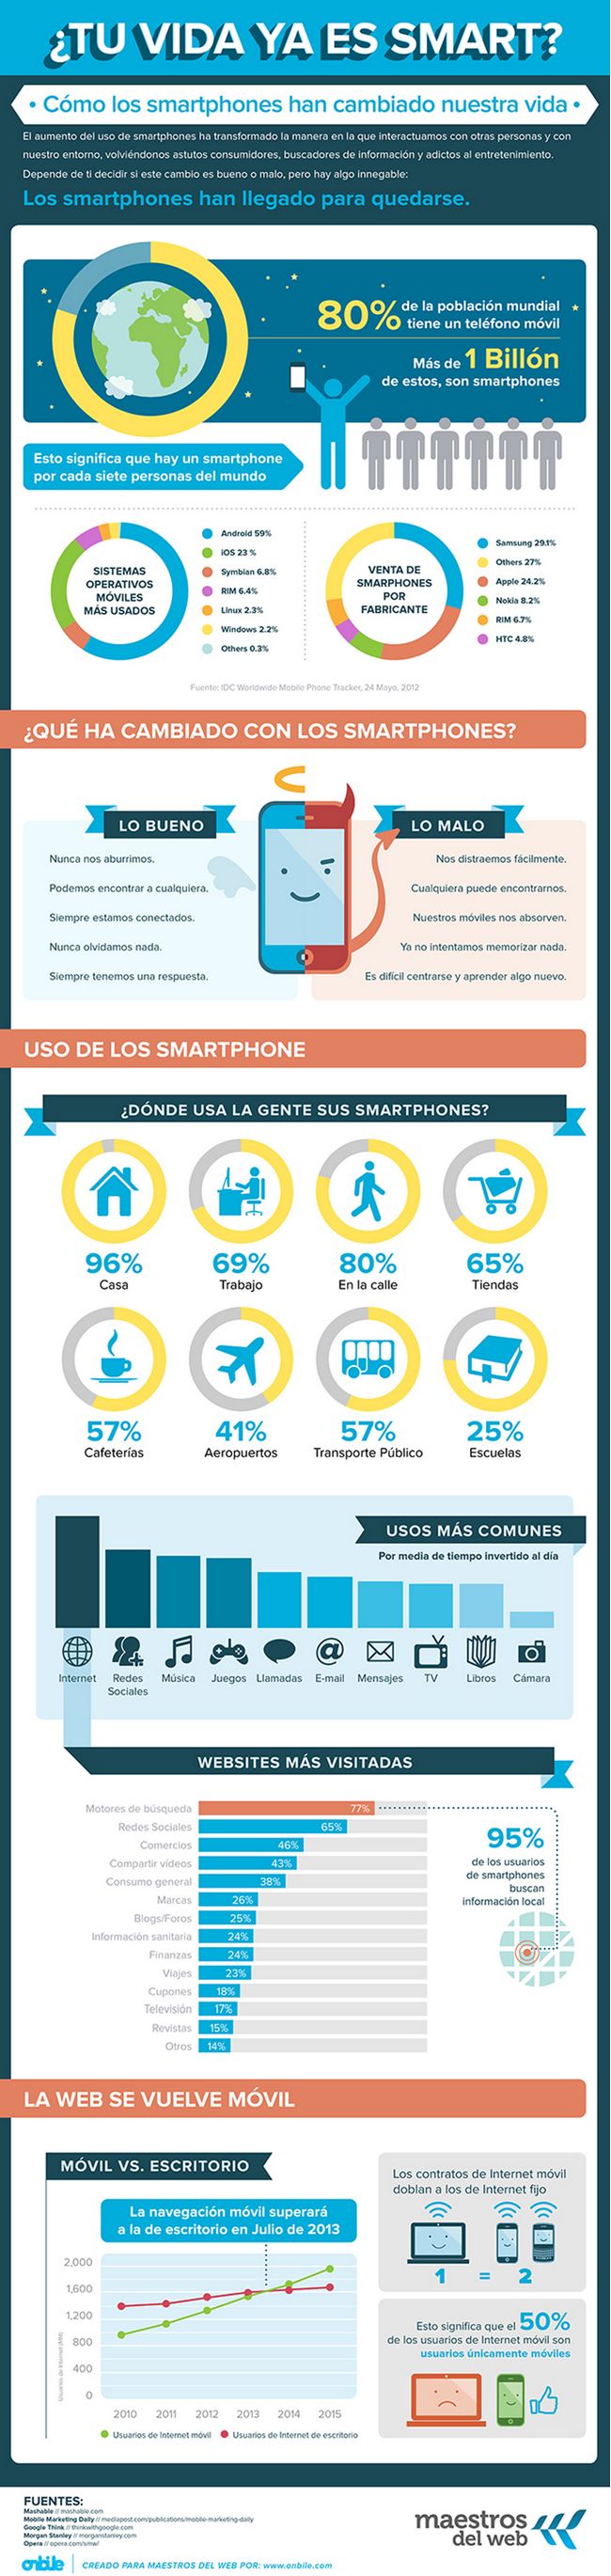 smartphones-infographic